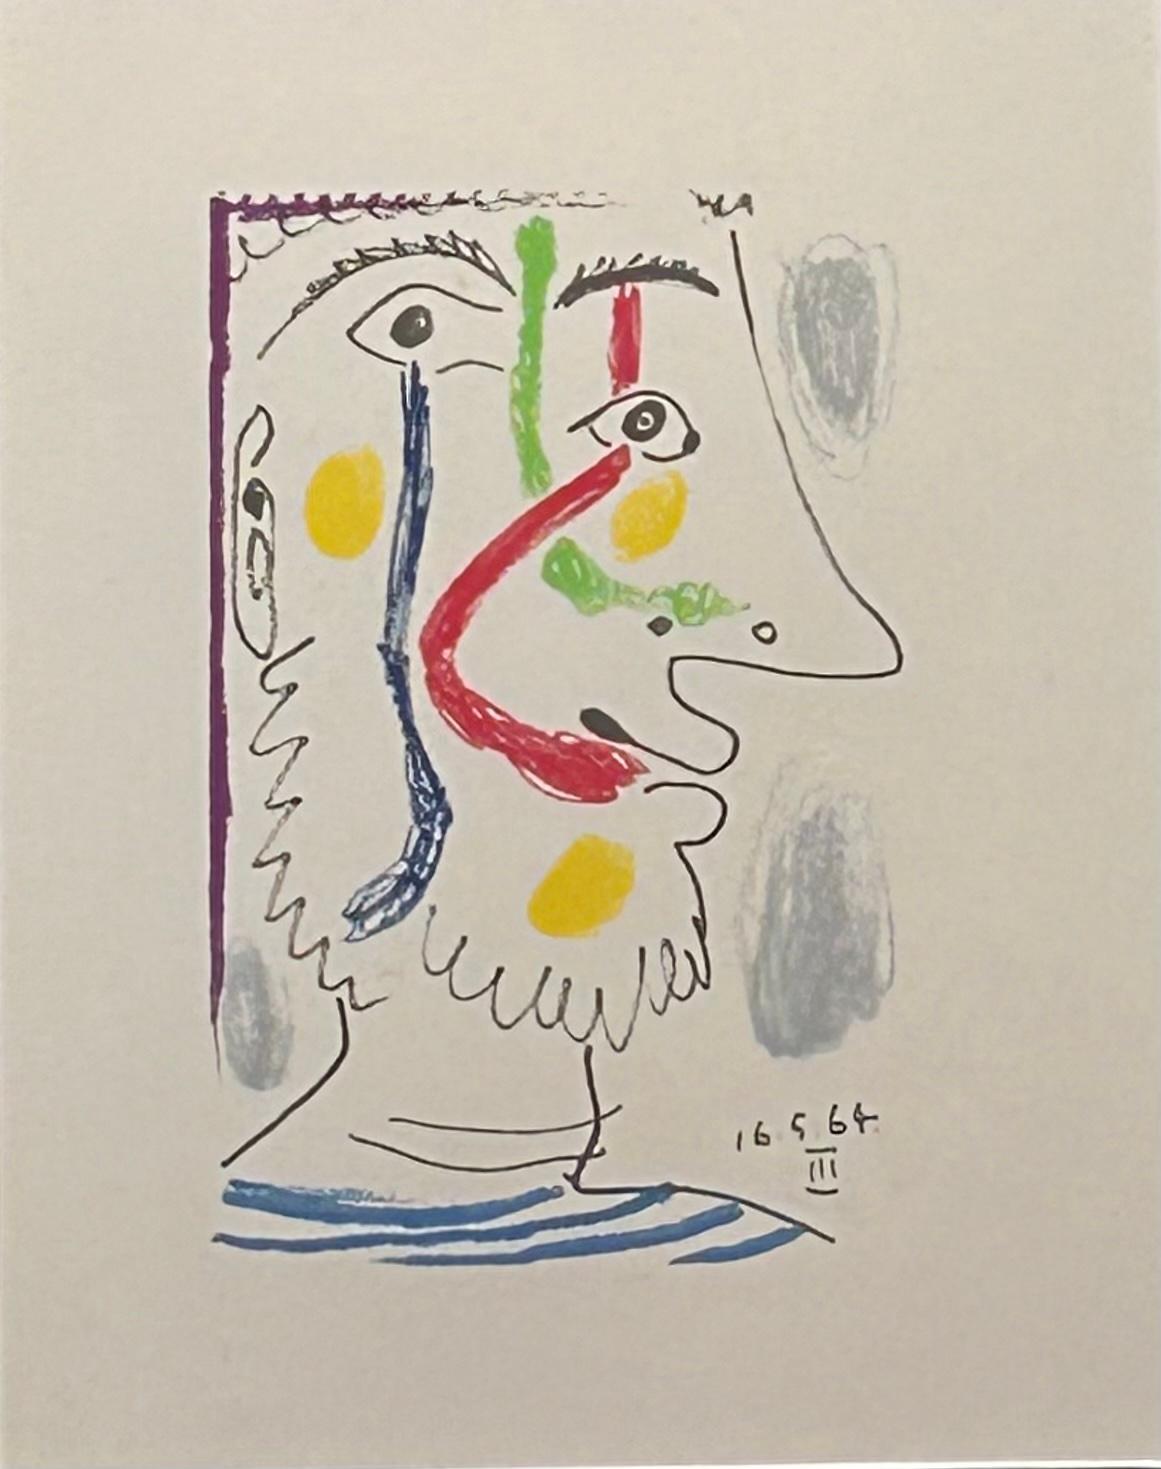 Colour Lithograph on Arches Paper '16.5.64.III' from 'Le Goût de Bonheur'  - Cubist Print by Pablo Picasso